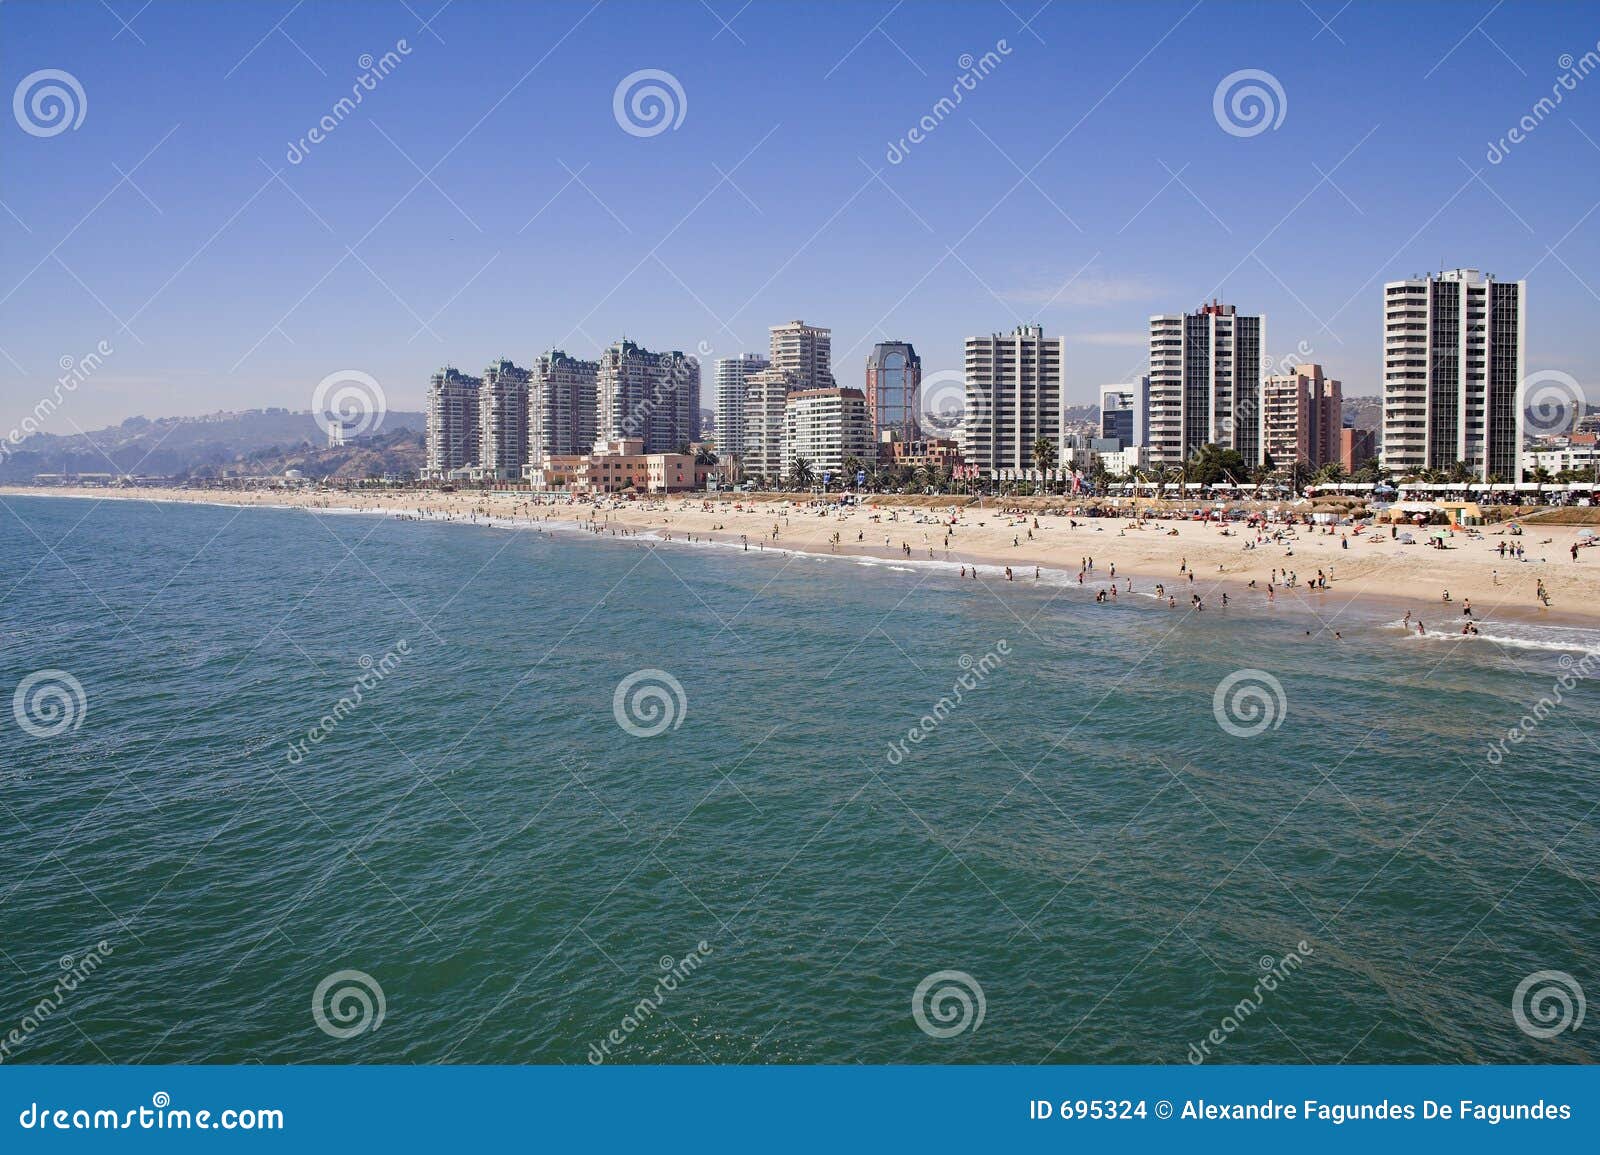 beach and cityscape in vina del mar